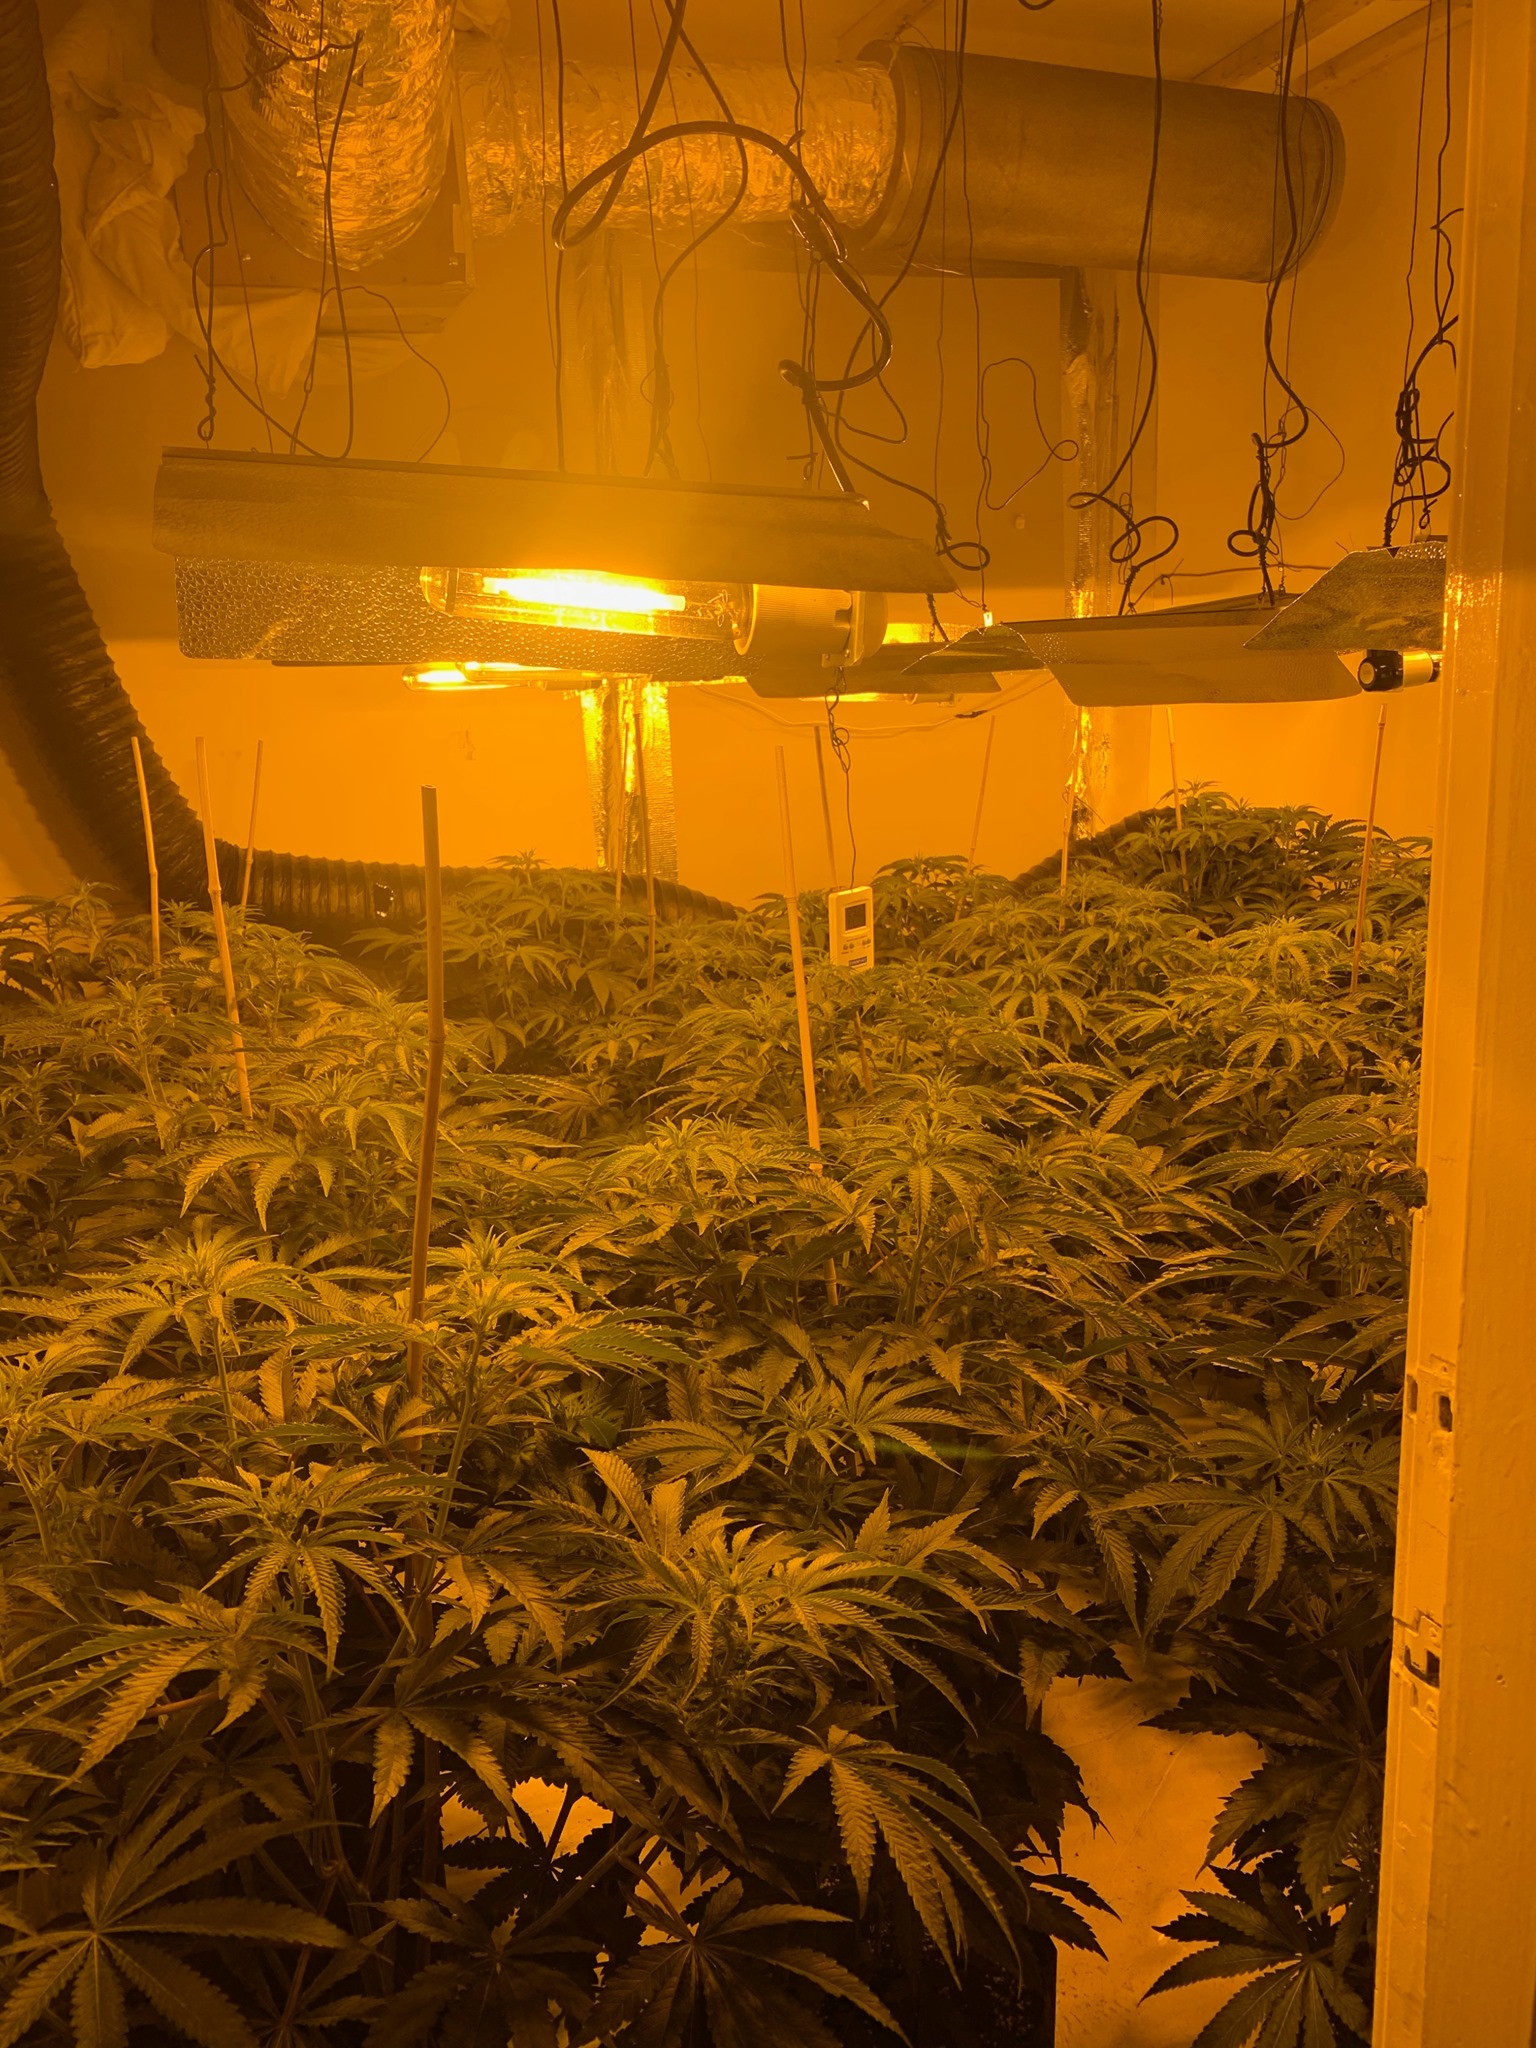 The cannabis farm that police found